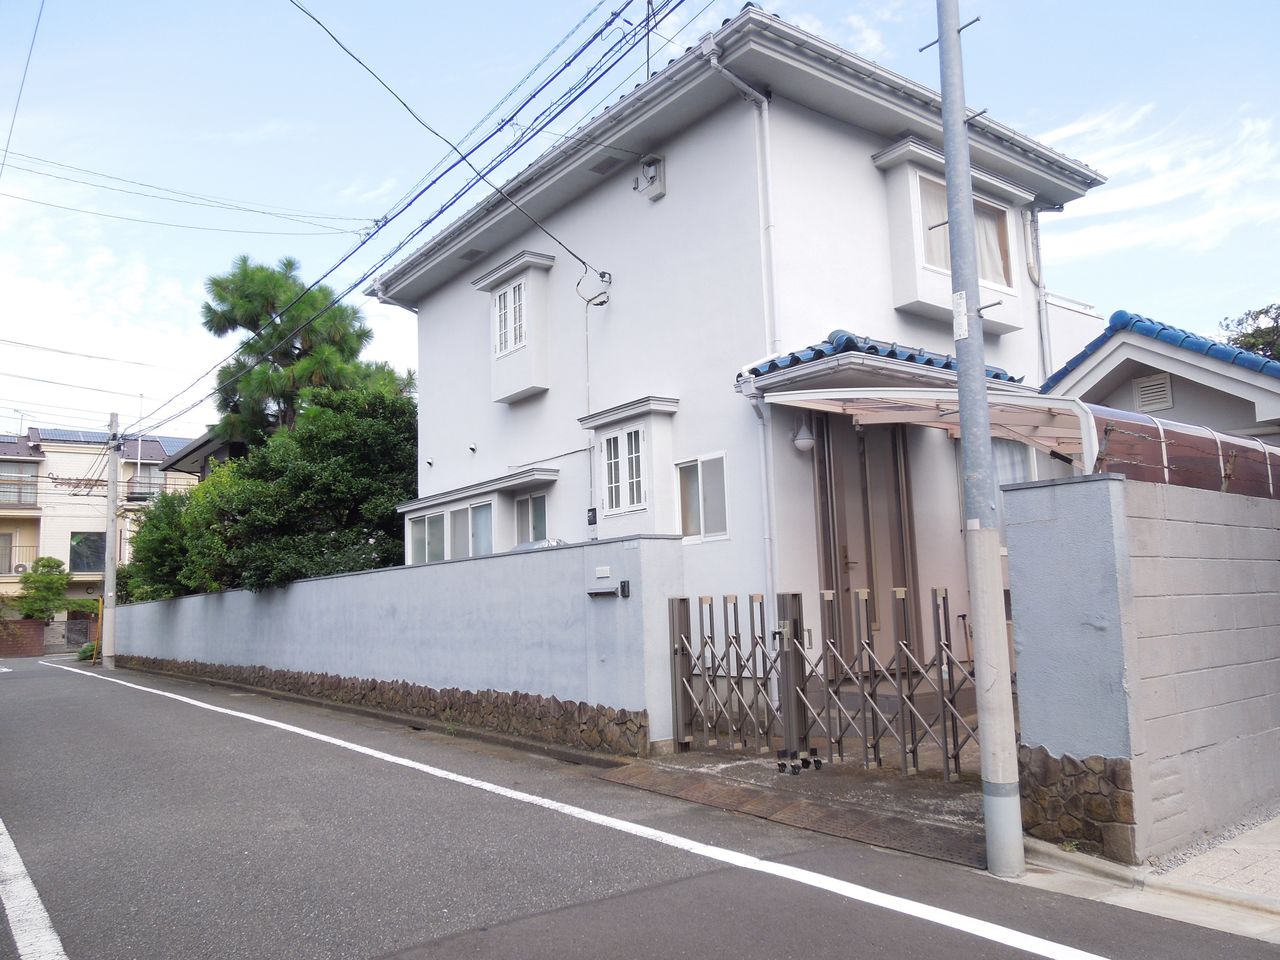 東京都内の豪邸探索ブログ
	  五本木に敷地の広い家がありました